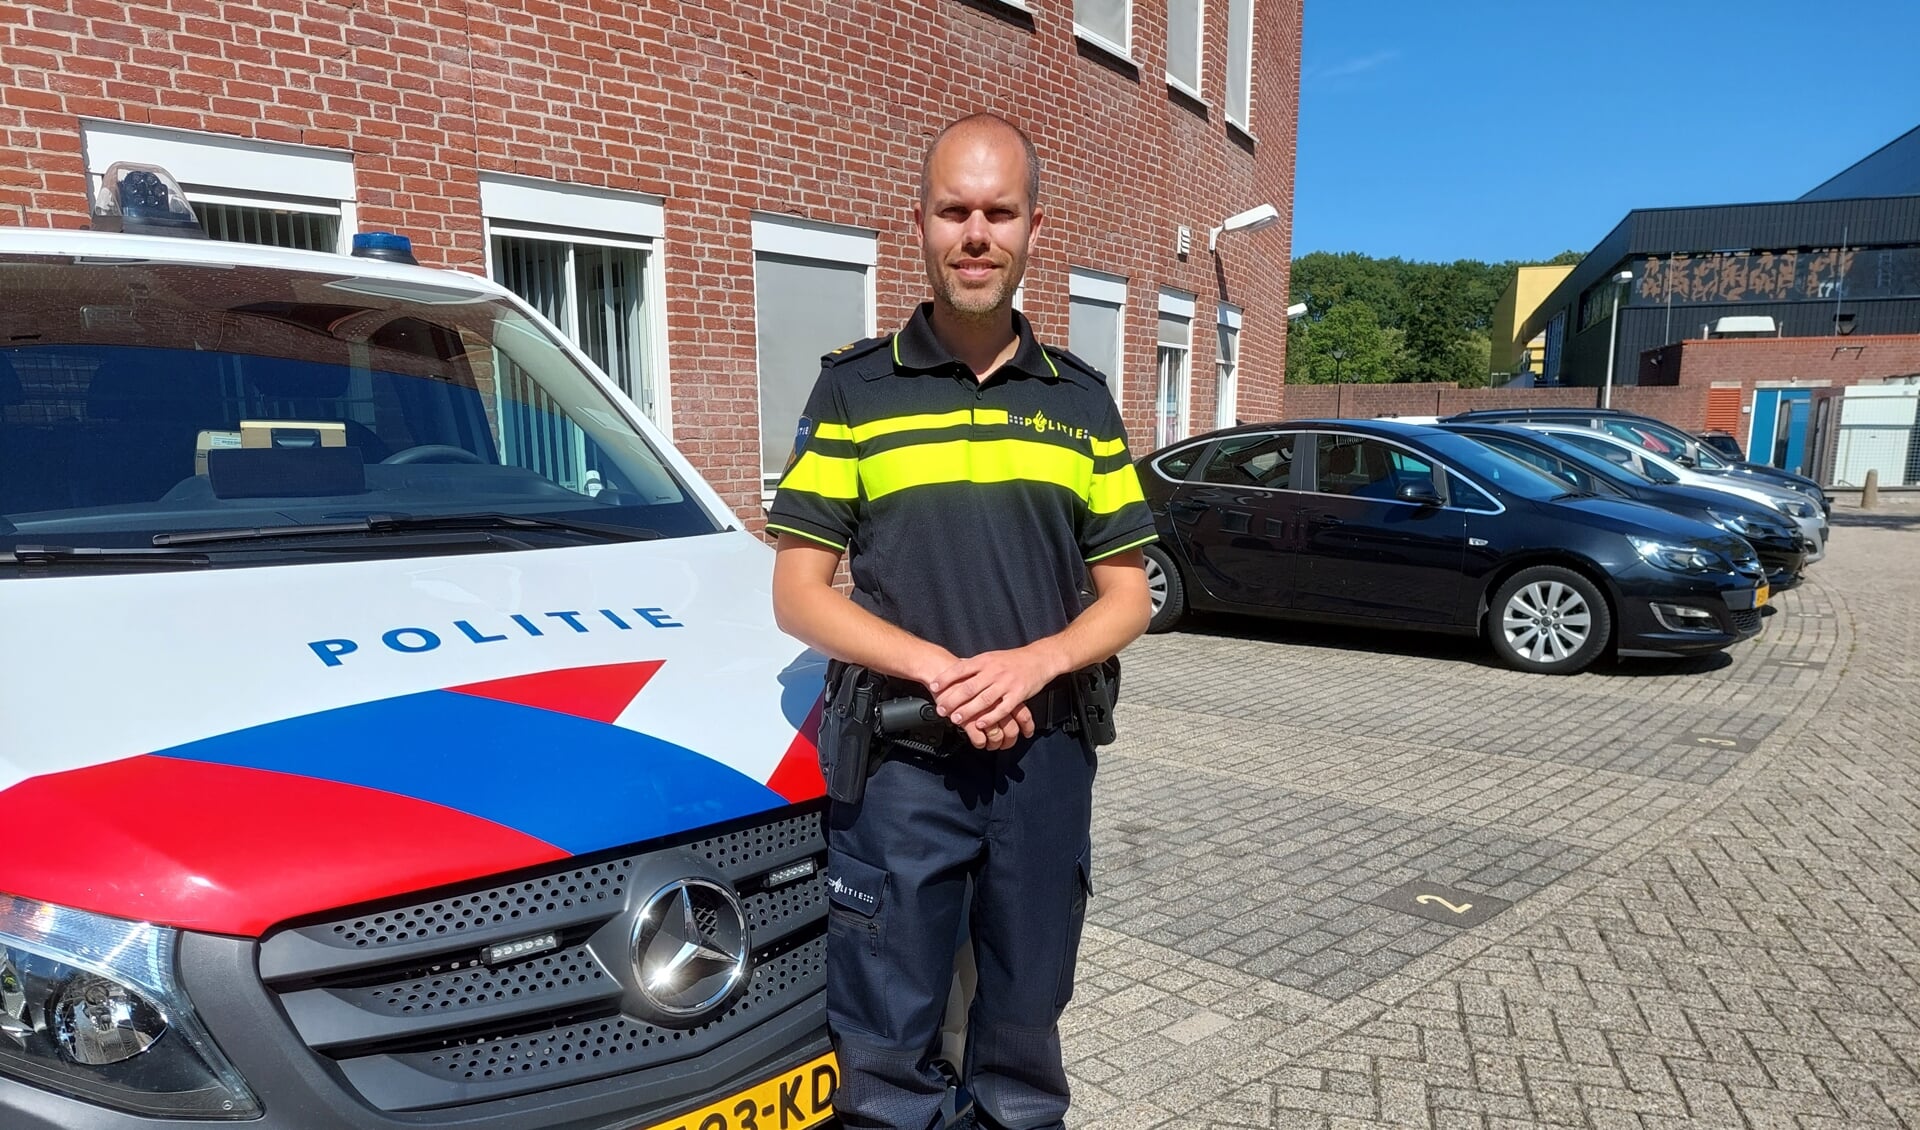 “Politieagenten gaan voor elkaar door het vuur," zegt teamchef Stefan van Egmond. “Veiligheid staat bij ons voorop.”